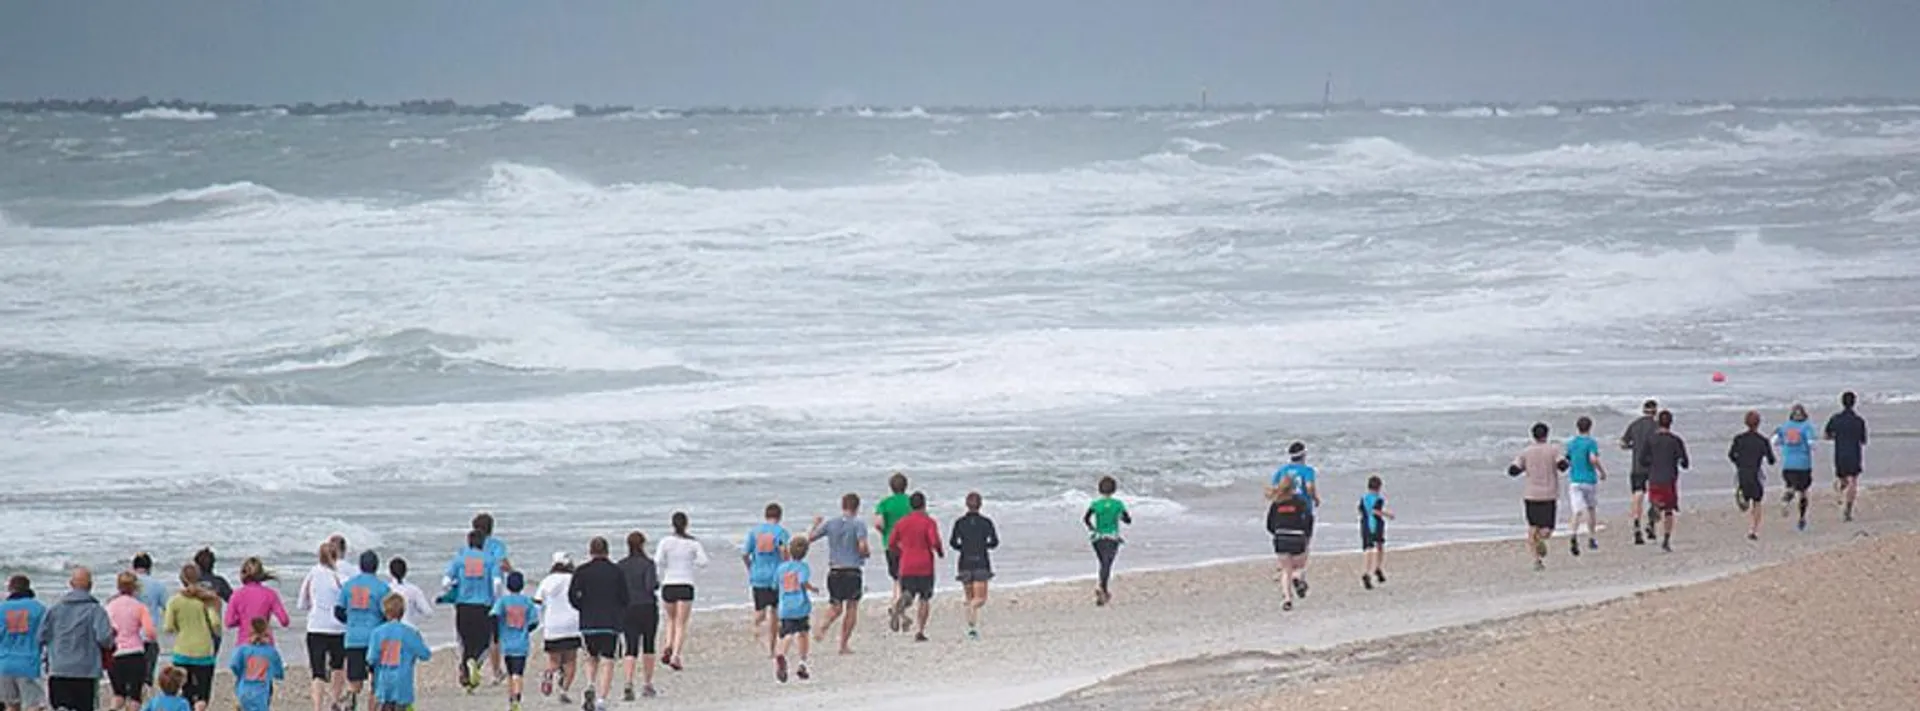 Surfside Beach Marathon & Half Marathon